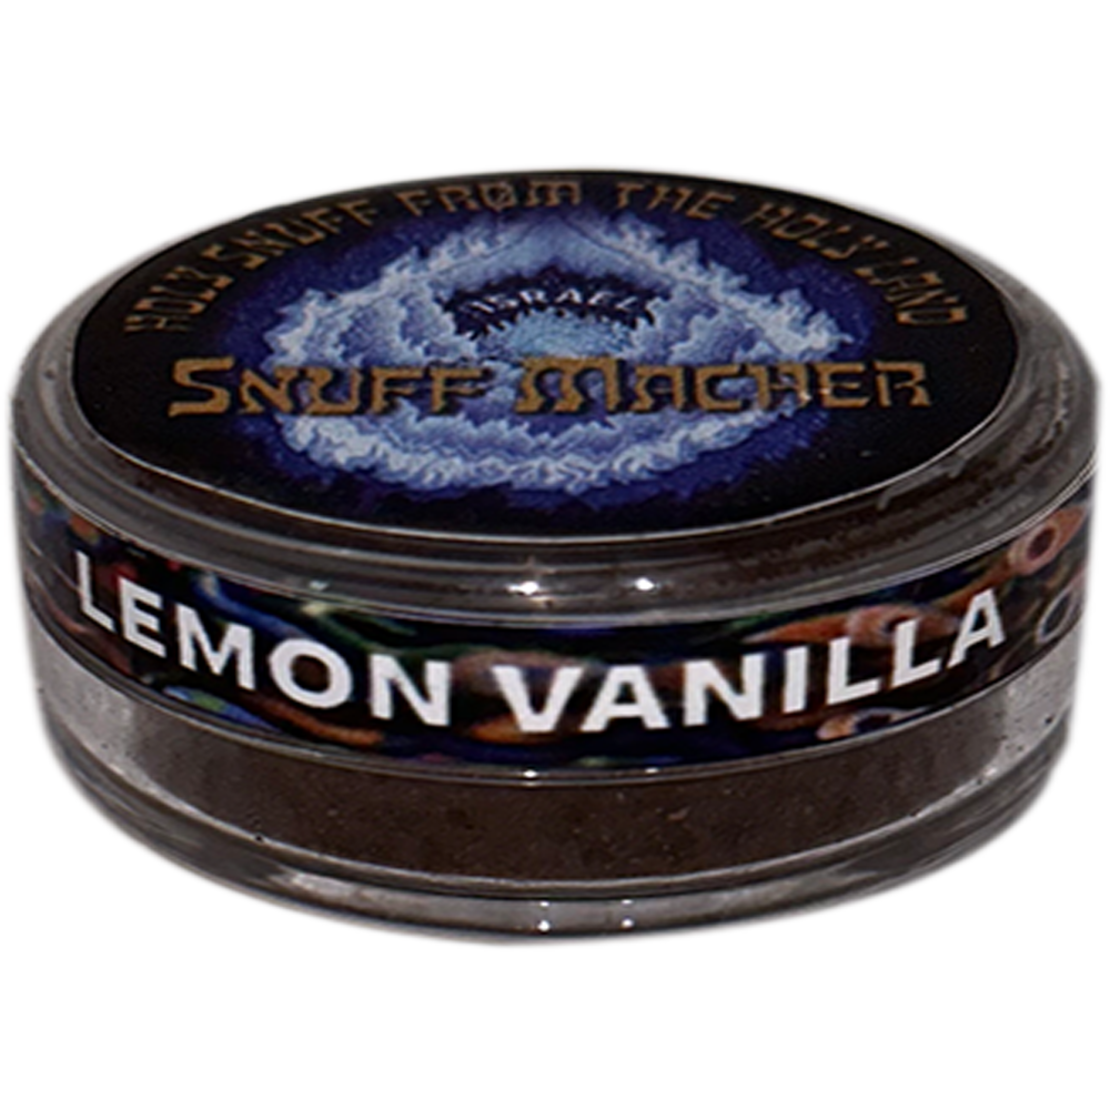 טבק להרחה Lemon vanilla